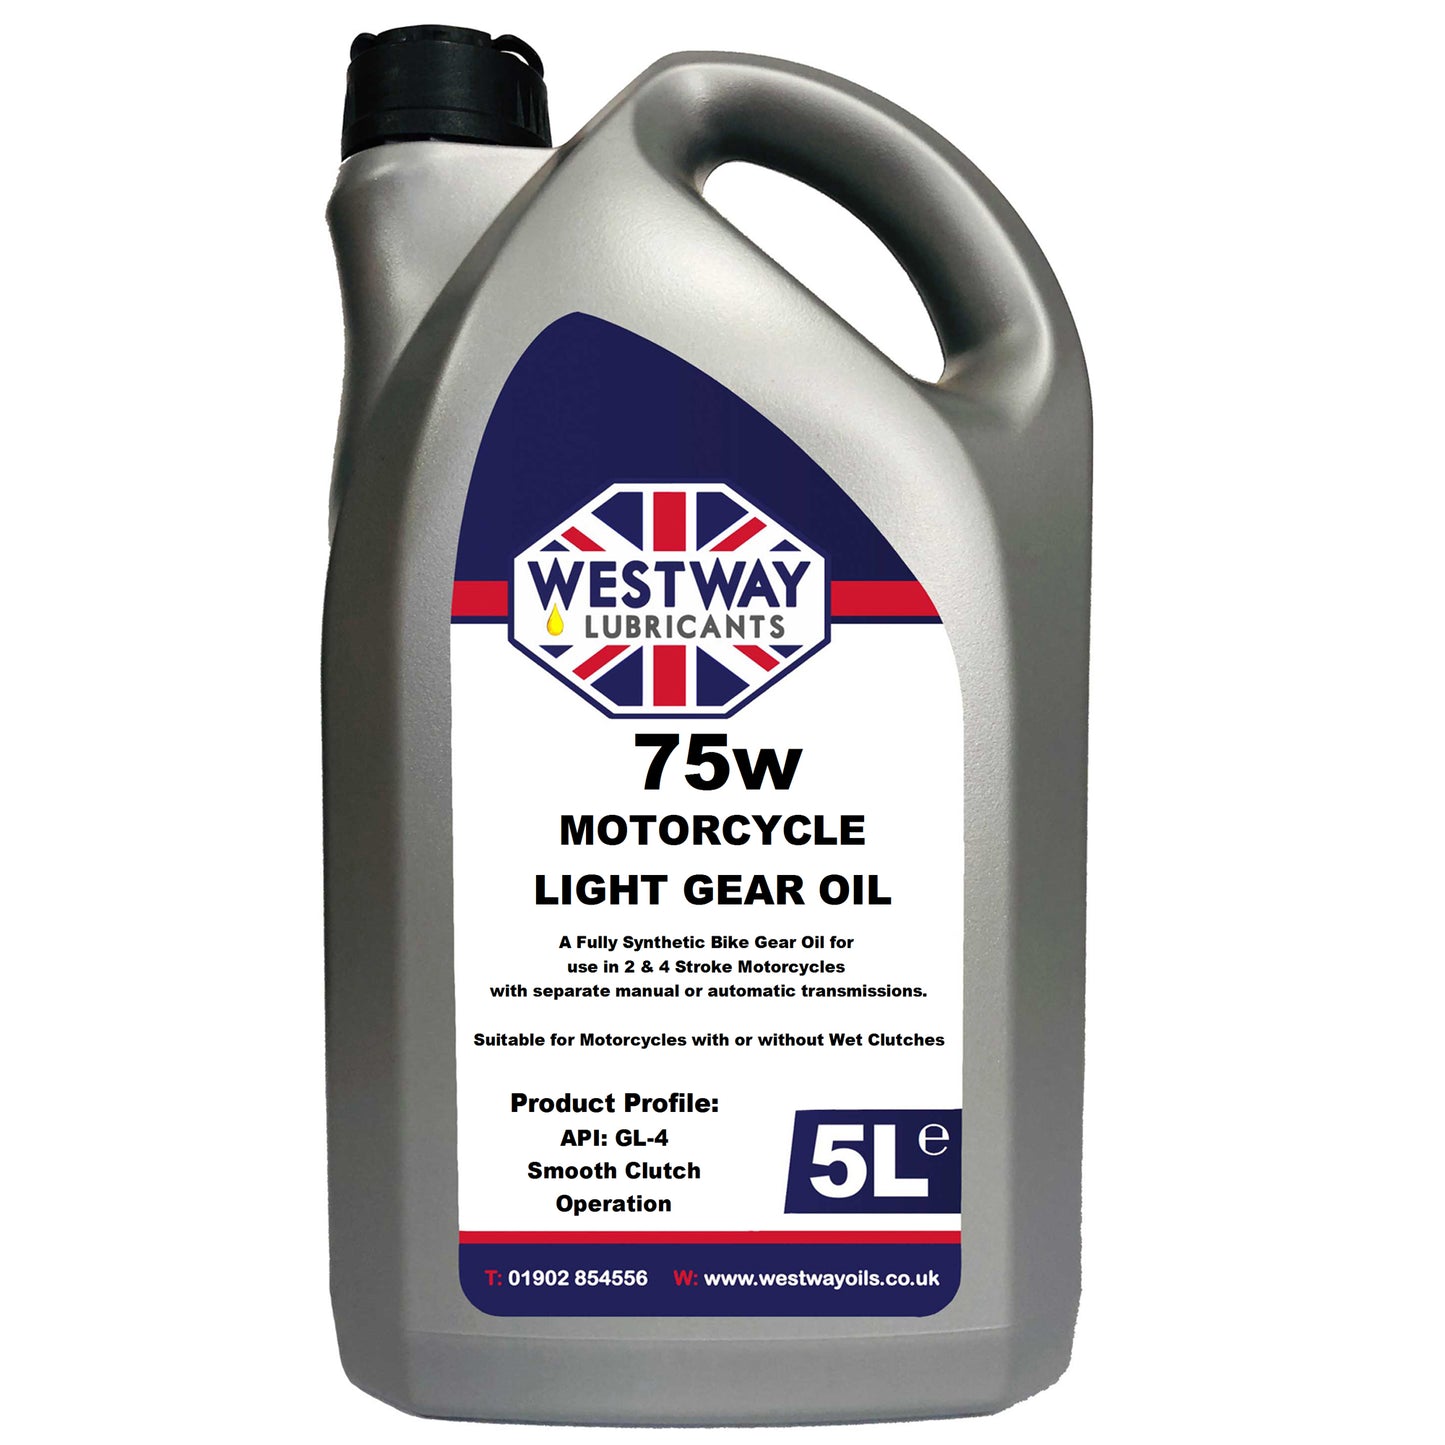 2 Stroke Gear Oil Light 75w Synthetic